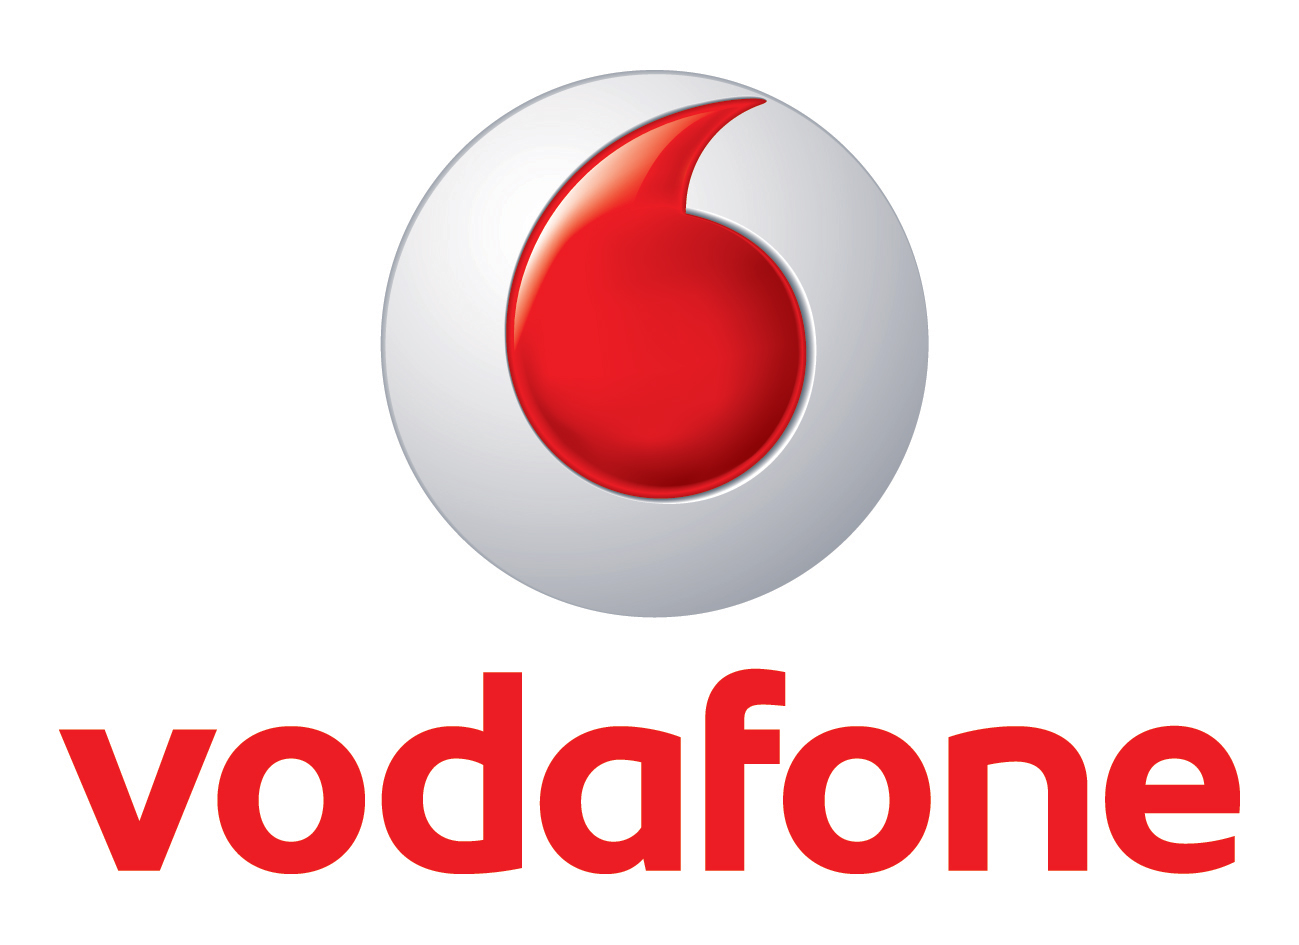 Vodafone Türkiye’nin yeni Yönetim Kurulu belli oldu @UDHB @btkbasin @VodafoneTR @Turkcell @Turk_Telekom